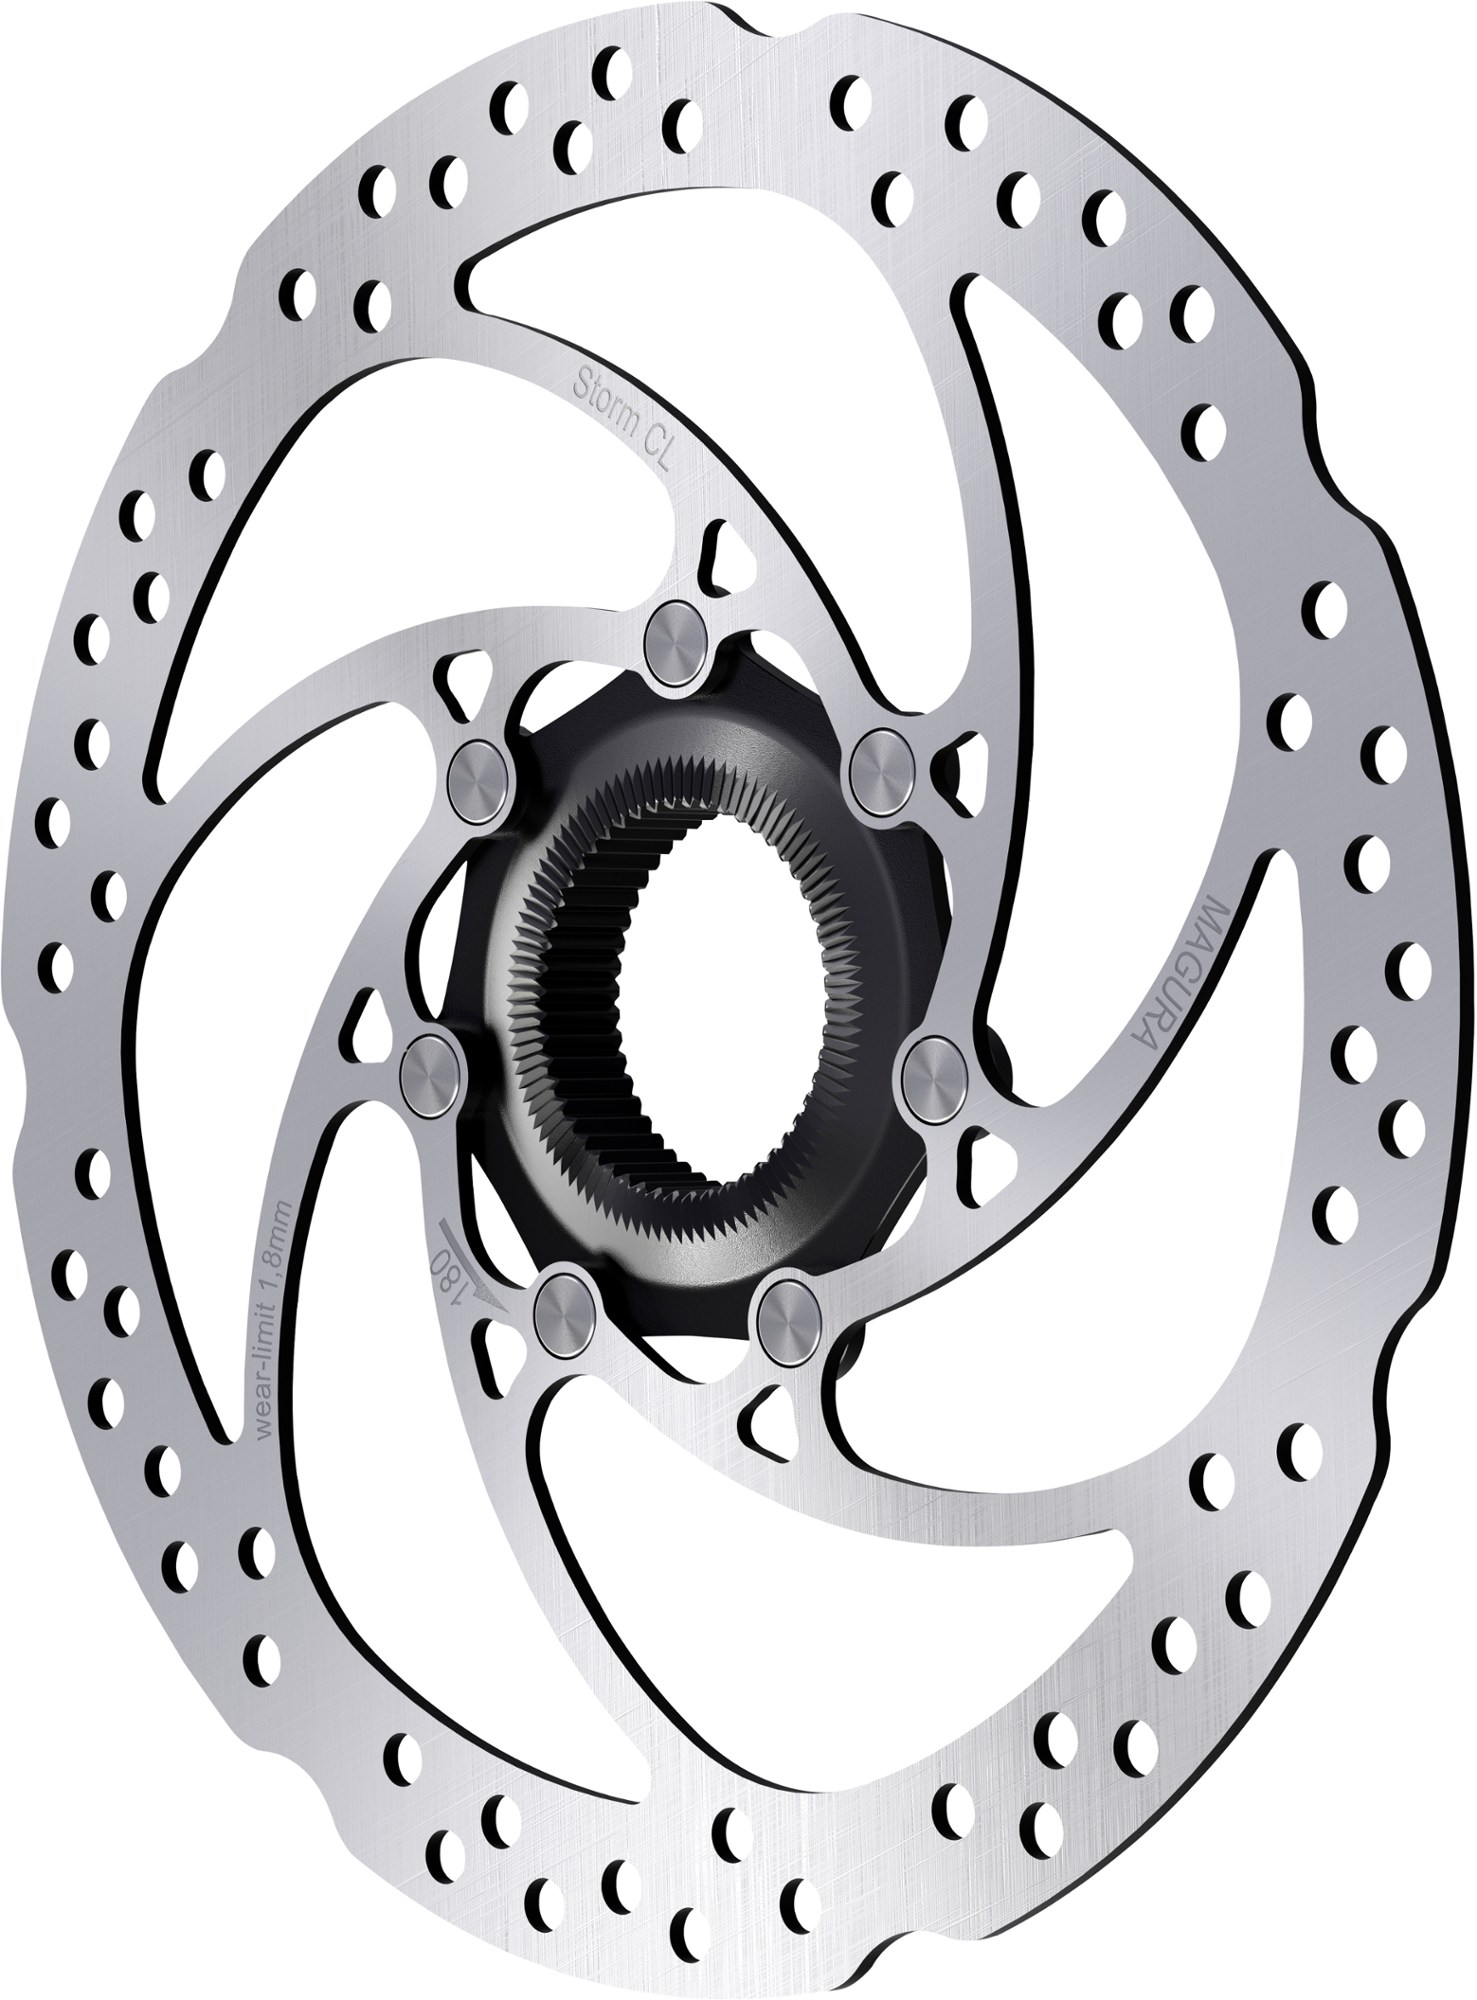 Ротор дискового тормоза Storm CL Magura, серый замок для дискового тормоза мотоцикла со специальным замком